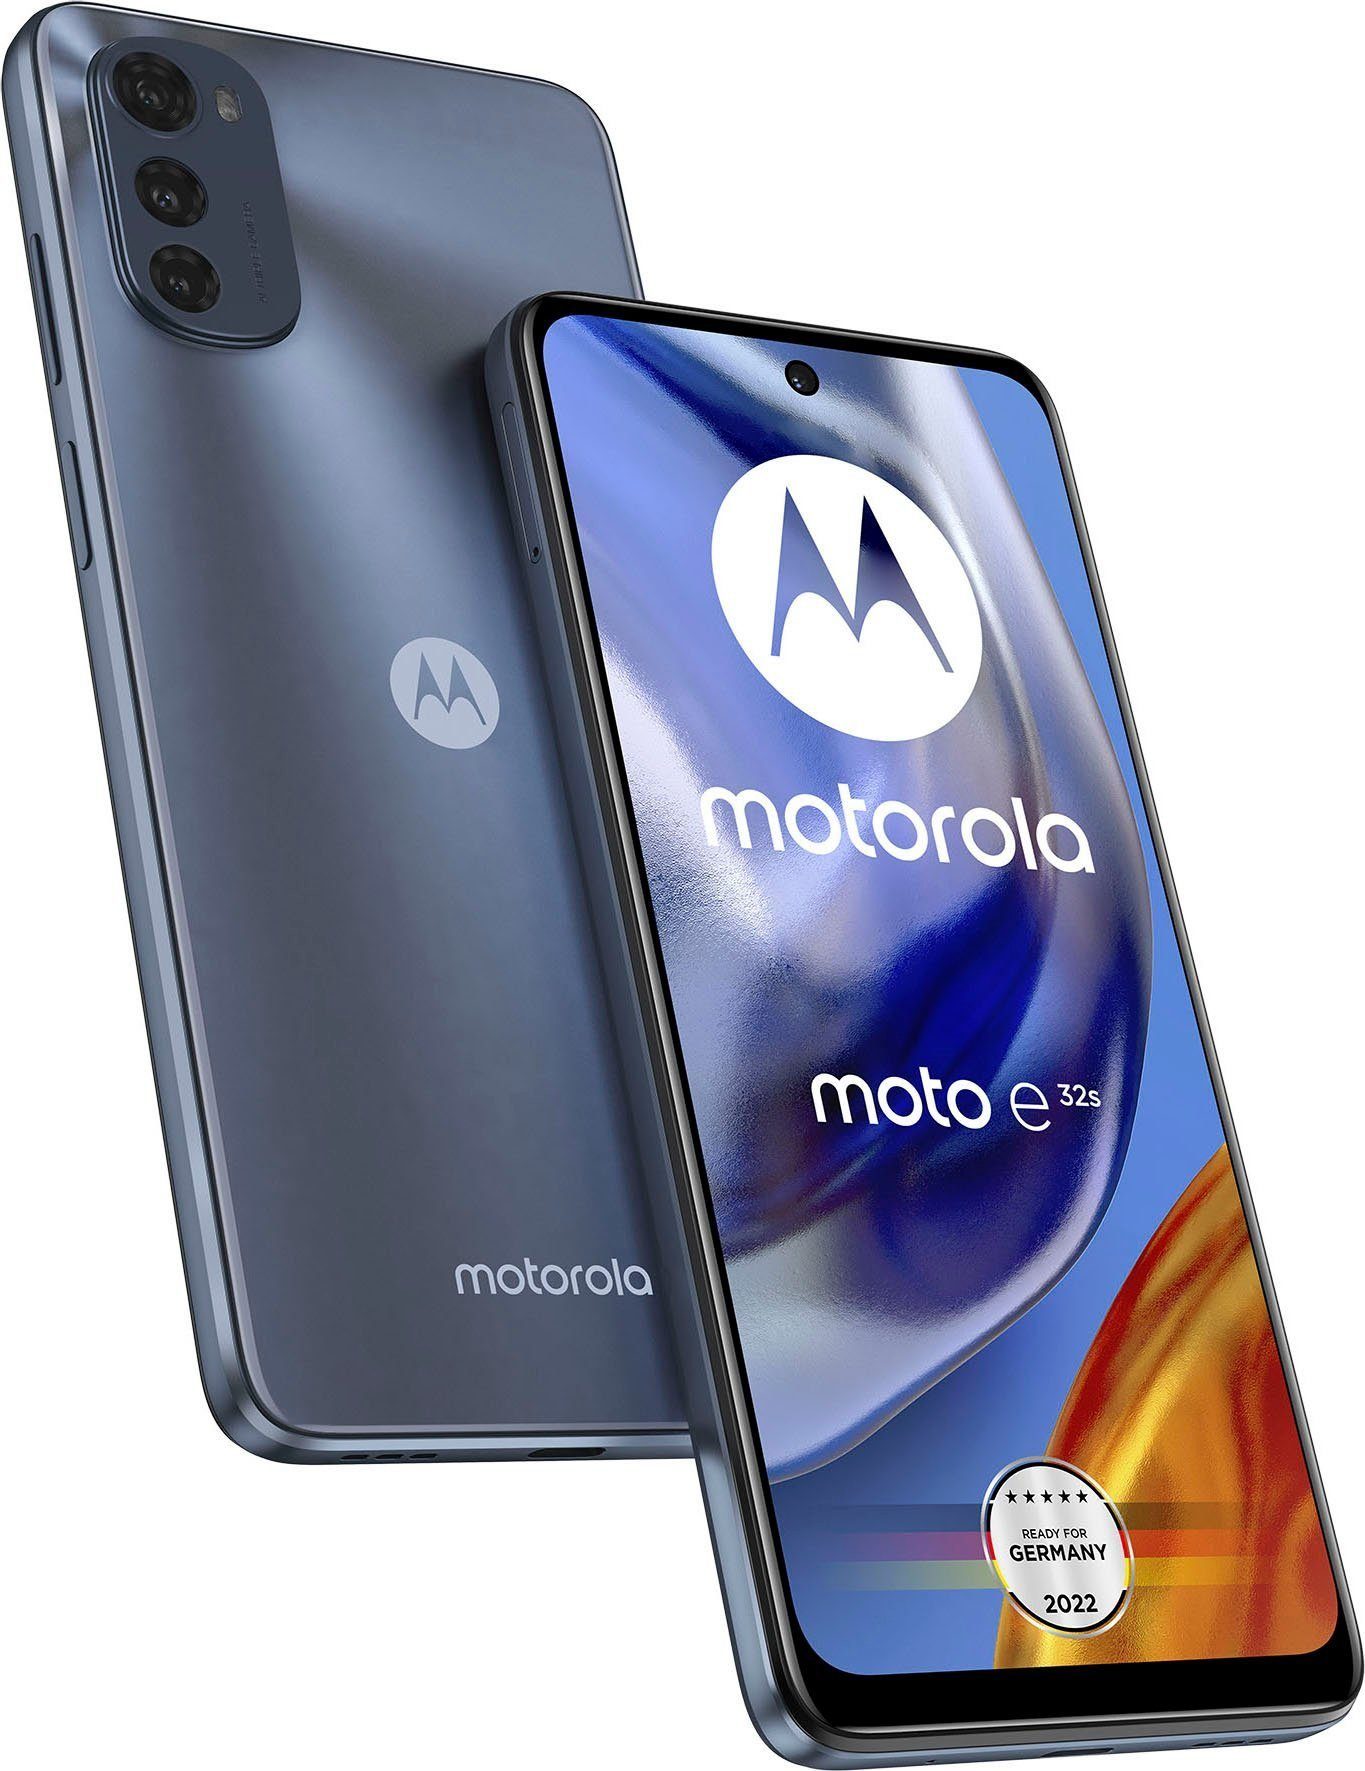 Motorola Motorola E32s, grey 32 GB Handy (32 GB Speicherplatz)